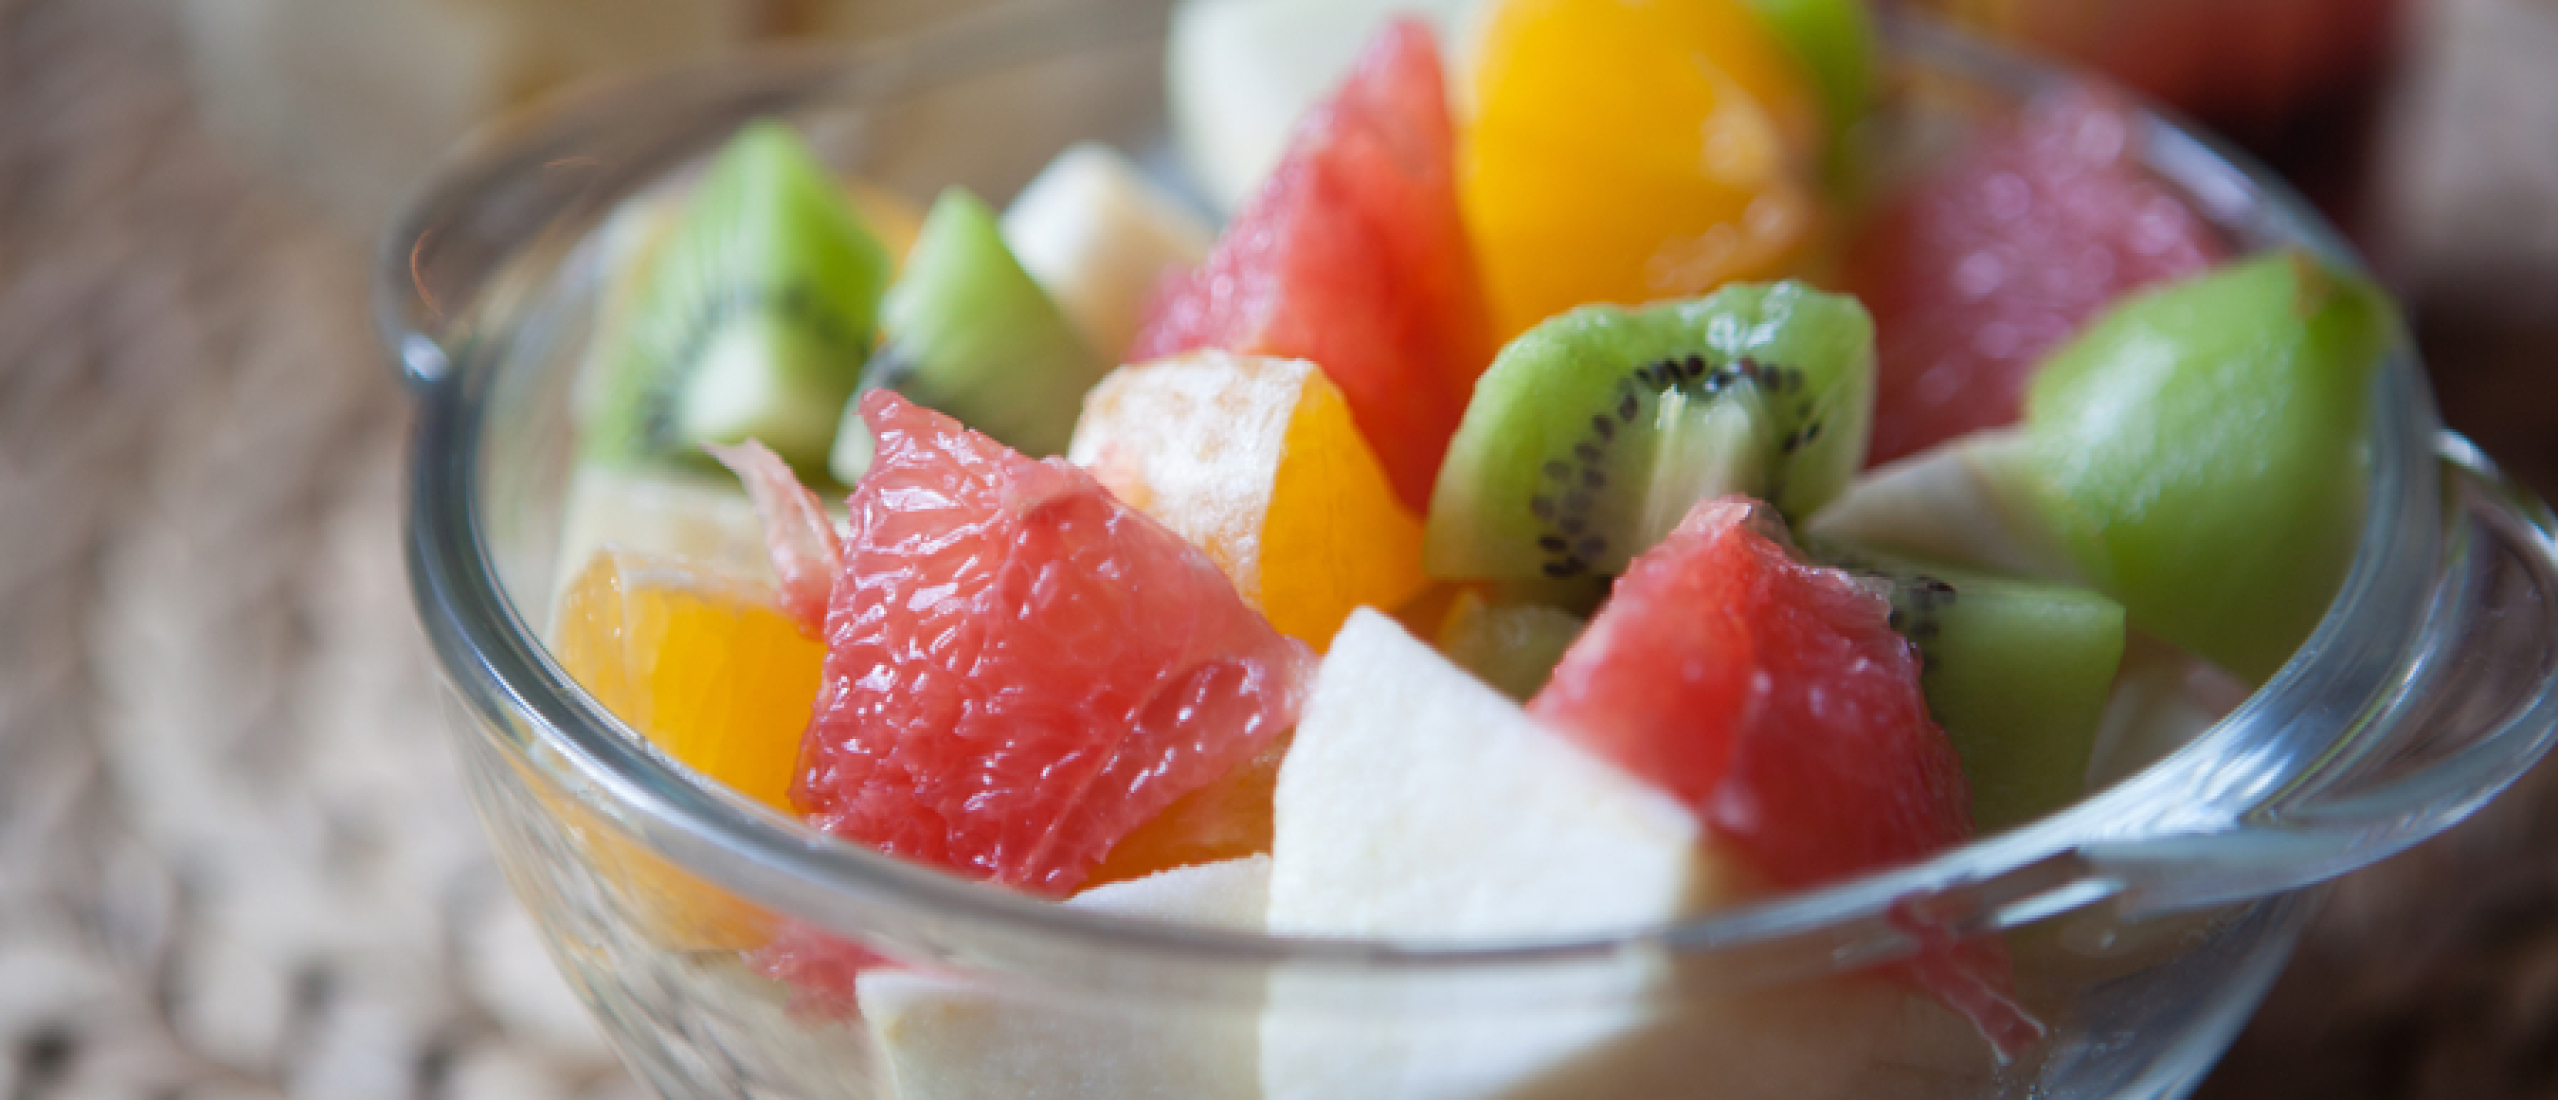 Recept voor tropische fruit salade